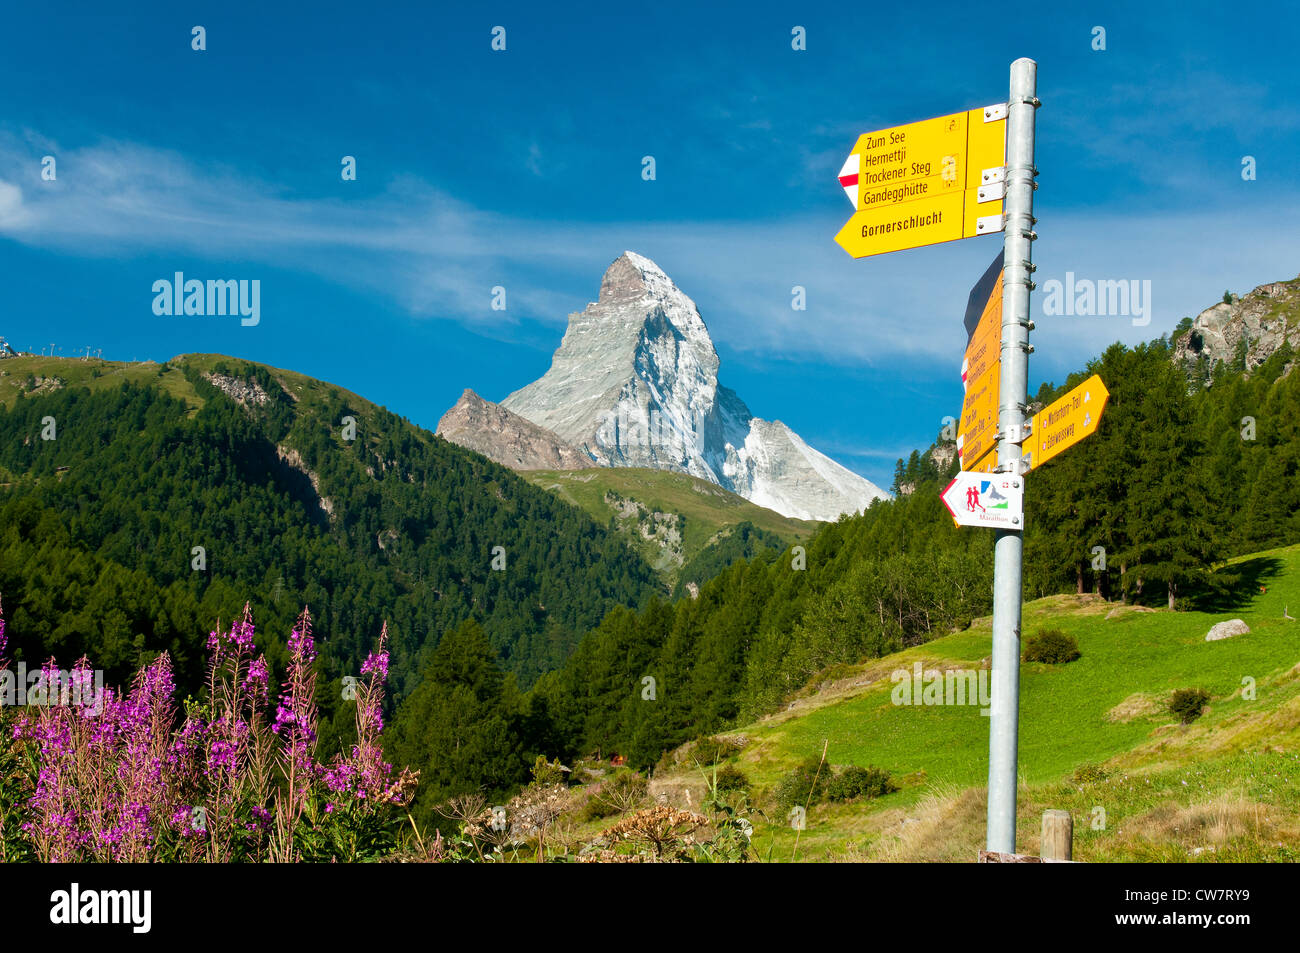 Sentier de randonnée pédestre avec panneau derrière le Cervin, Zermatt, Valais, Suisse Banque D'Images